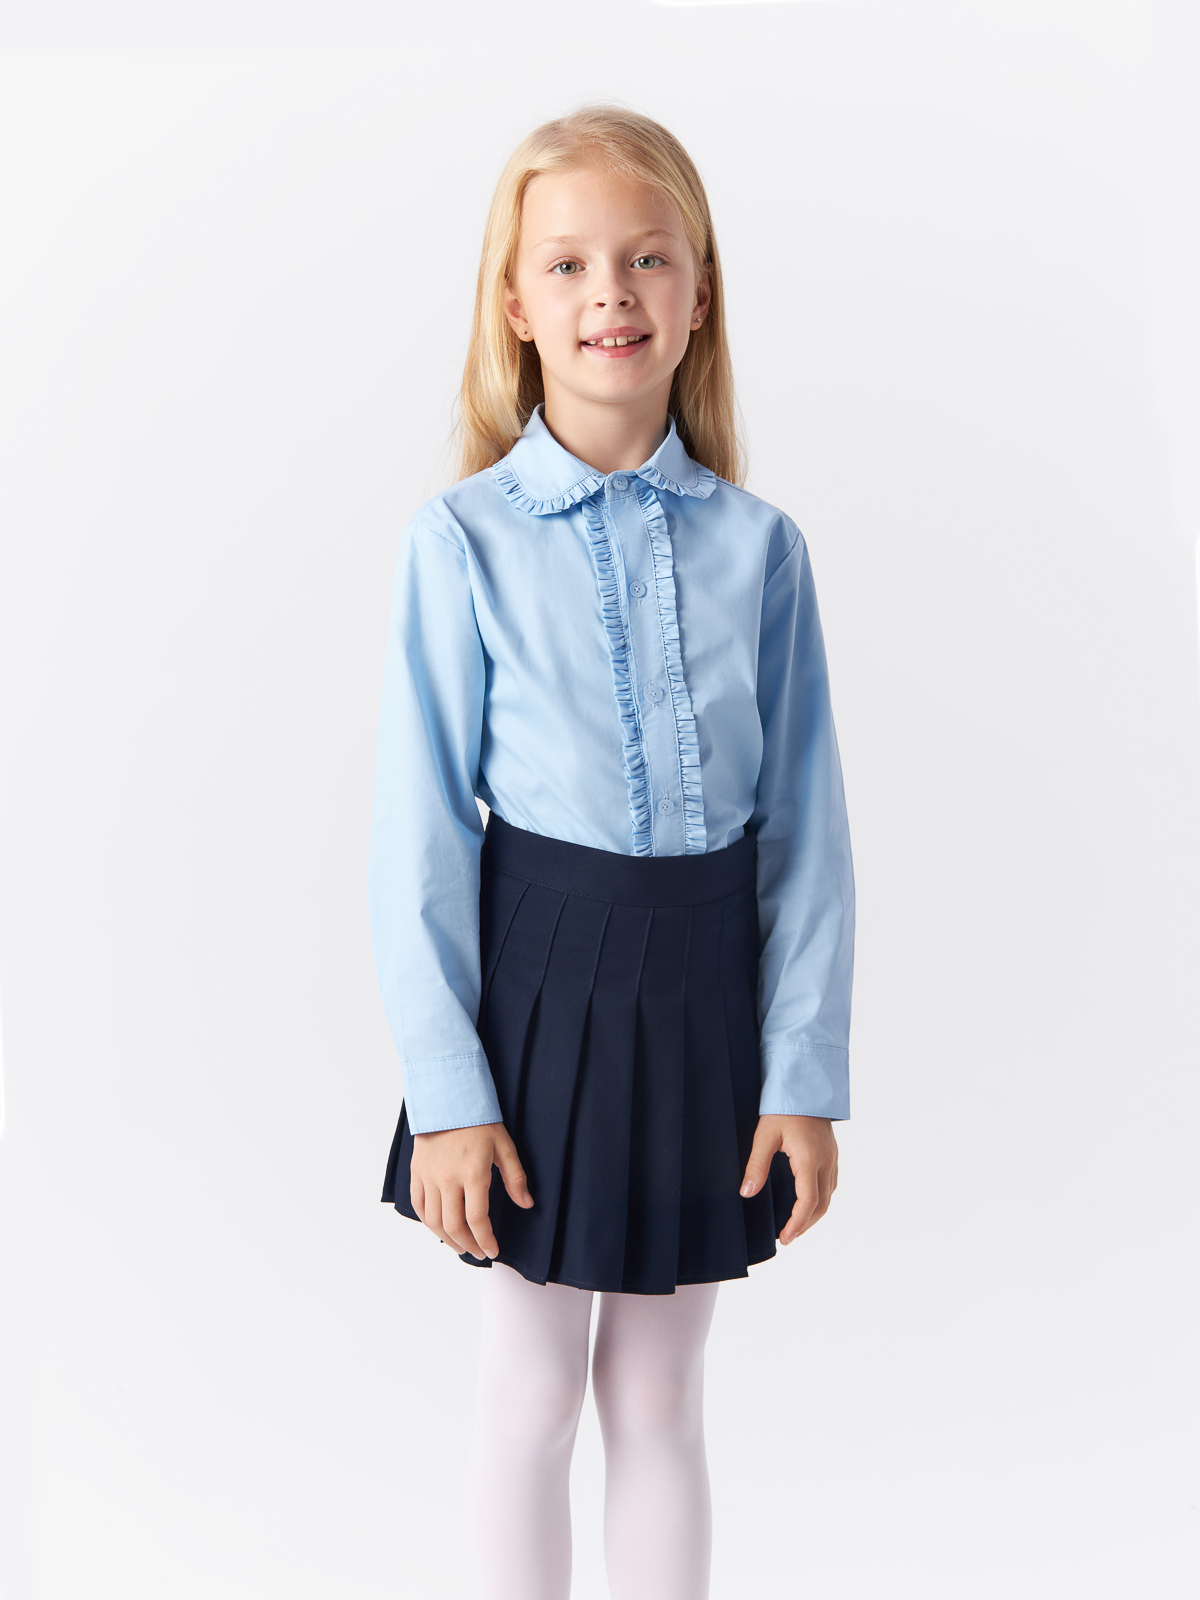 Блузка Yiwu Xflot Supply Chain детская, BS-2blue, размер 150 см блузка трикотажная школьная белая button blue 170